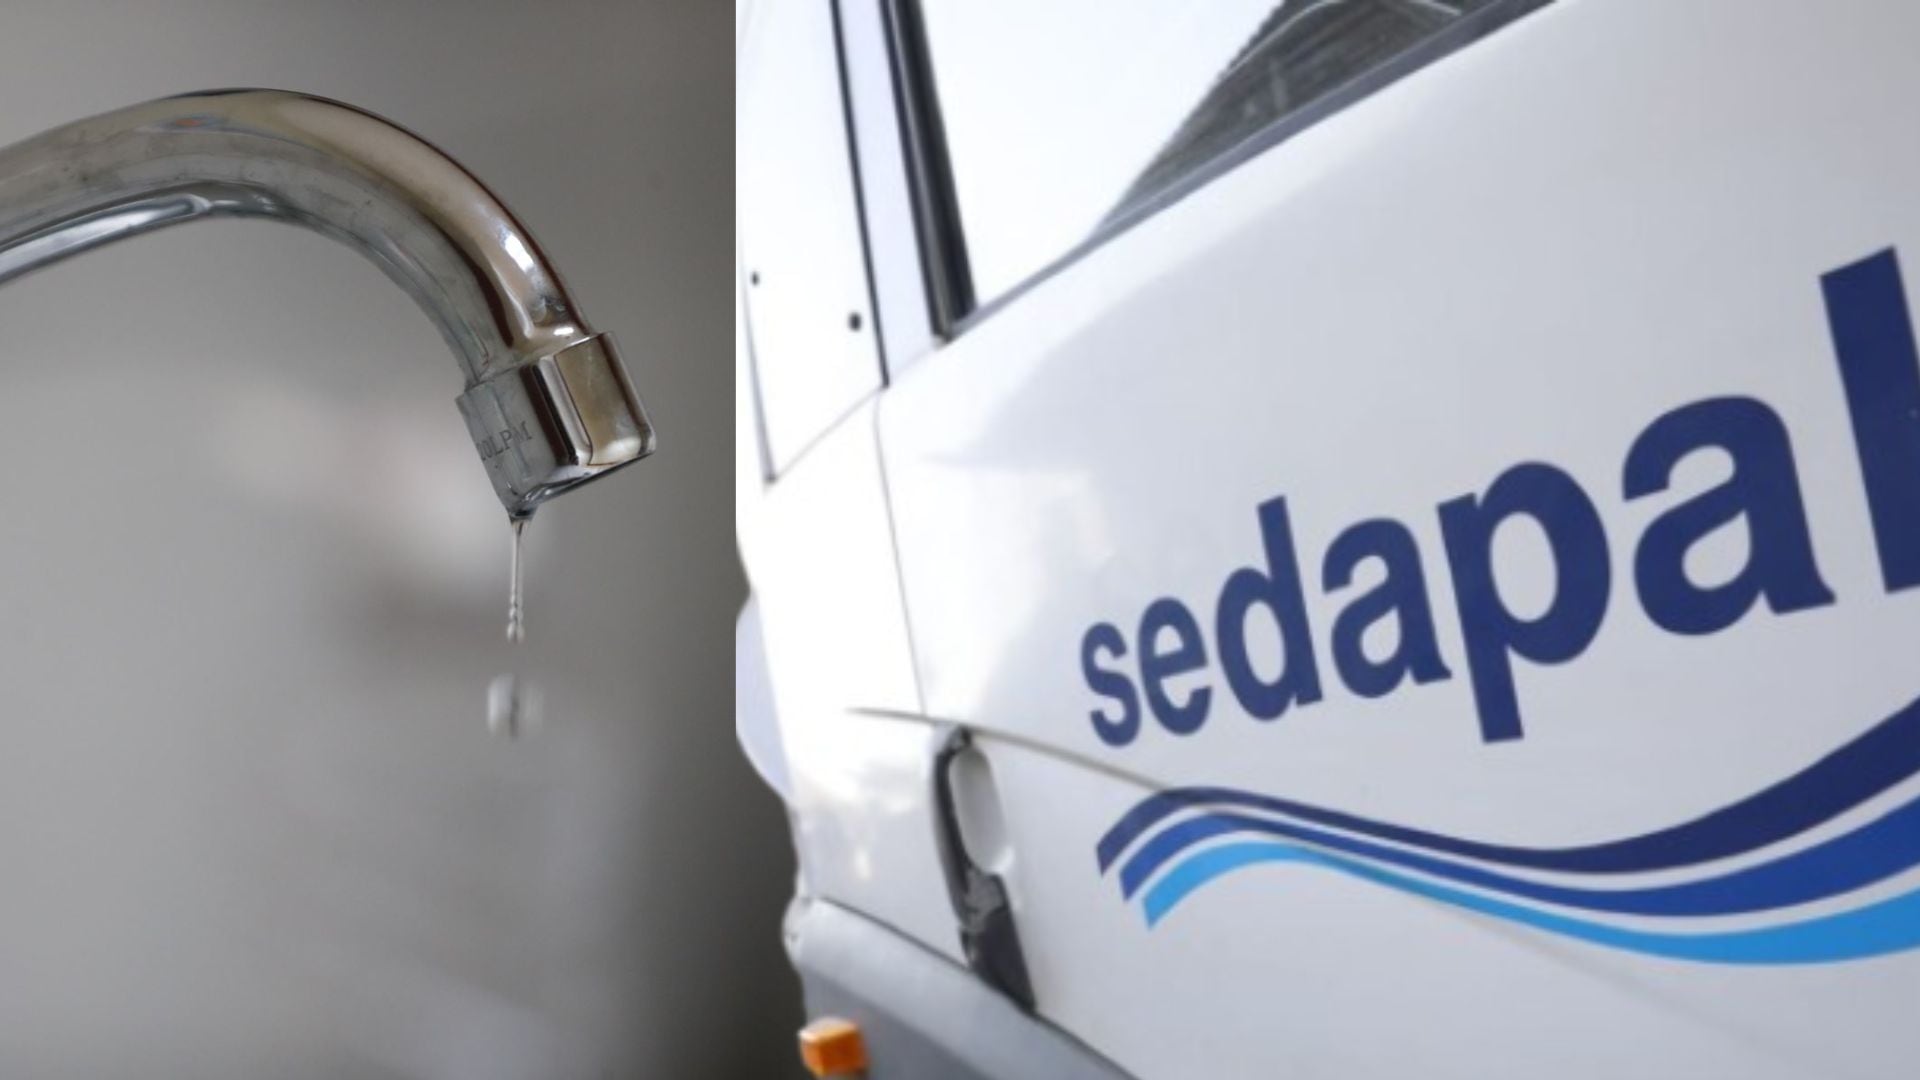 Este 28 y 29 de febrero hay corte de agua en Lima: Sedapal anuncia las zonas afectadas| Andina